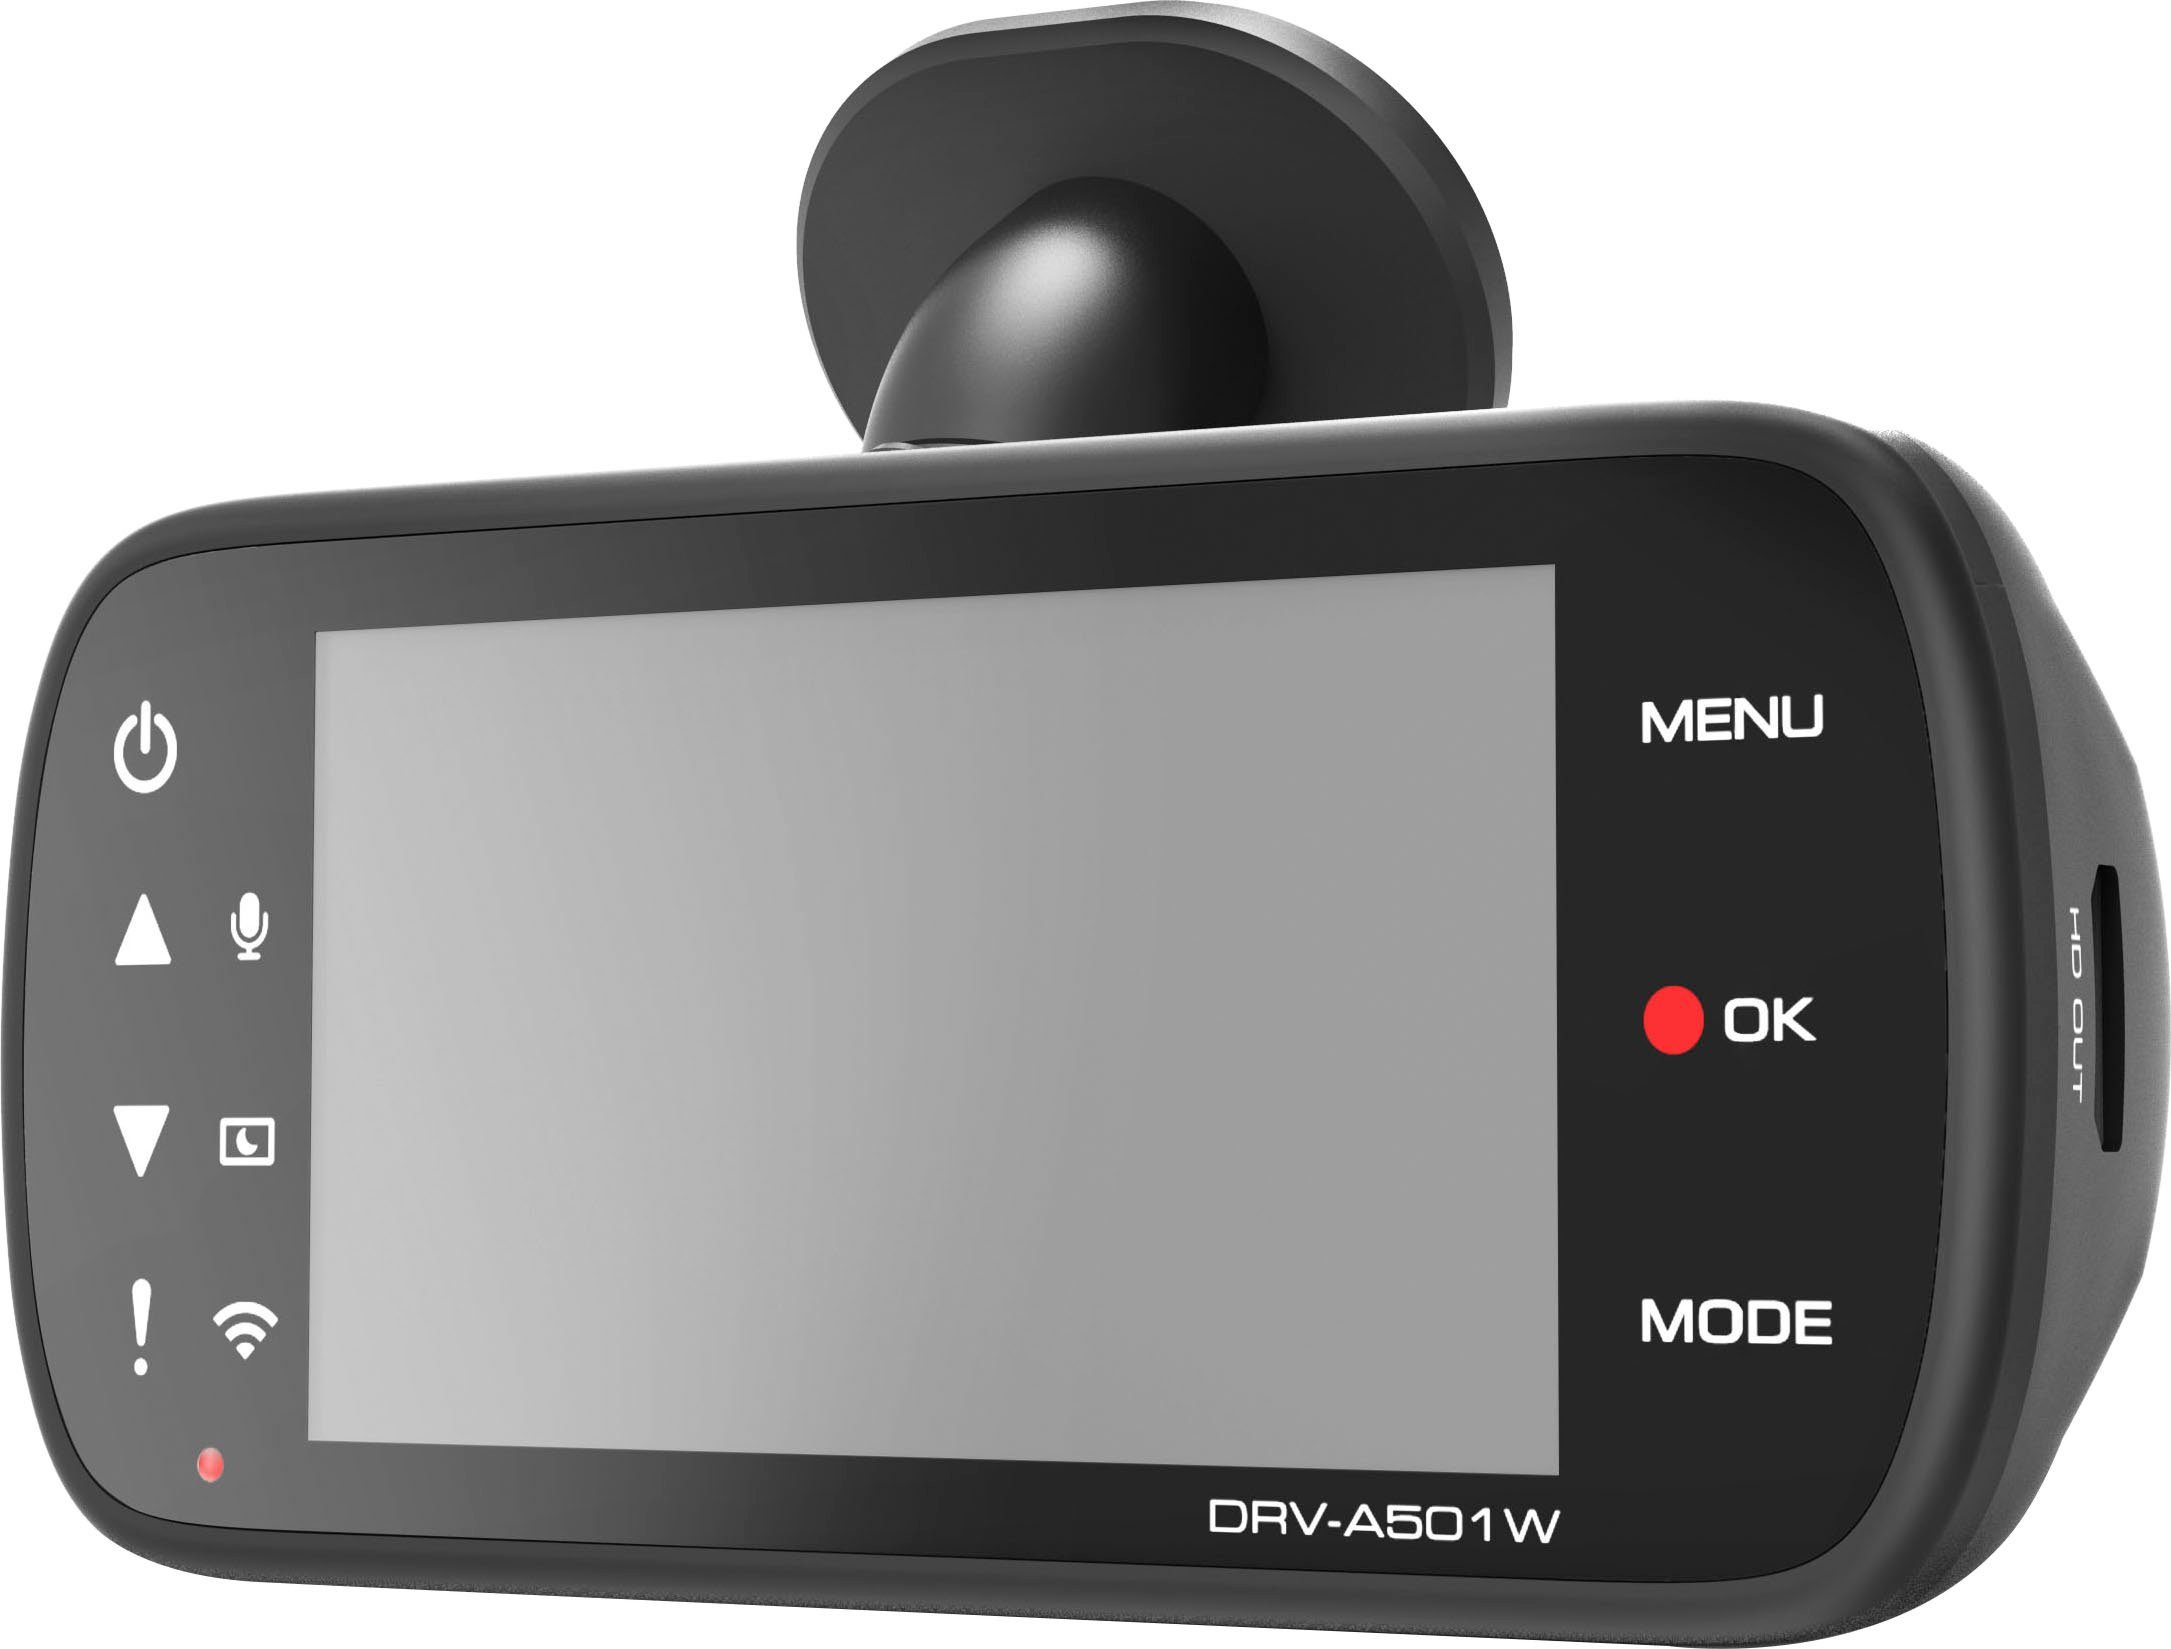 WLAN Kenwood DRV-A501W Dashcam (Wi-Fi) (WQHD,